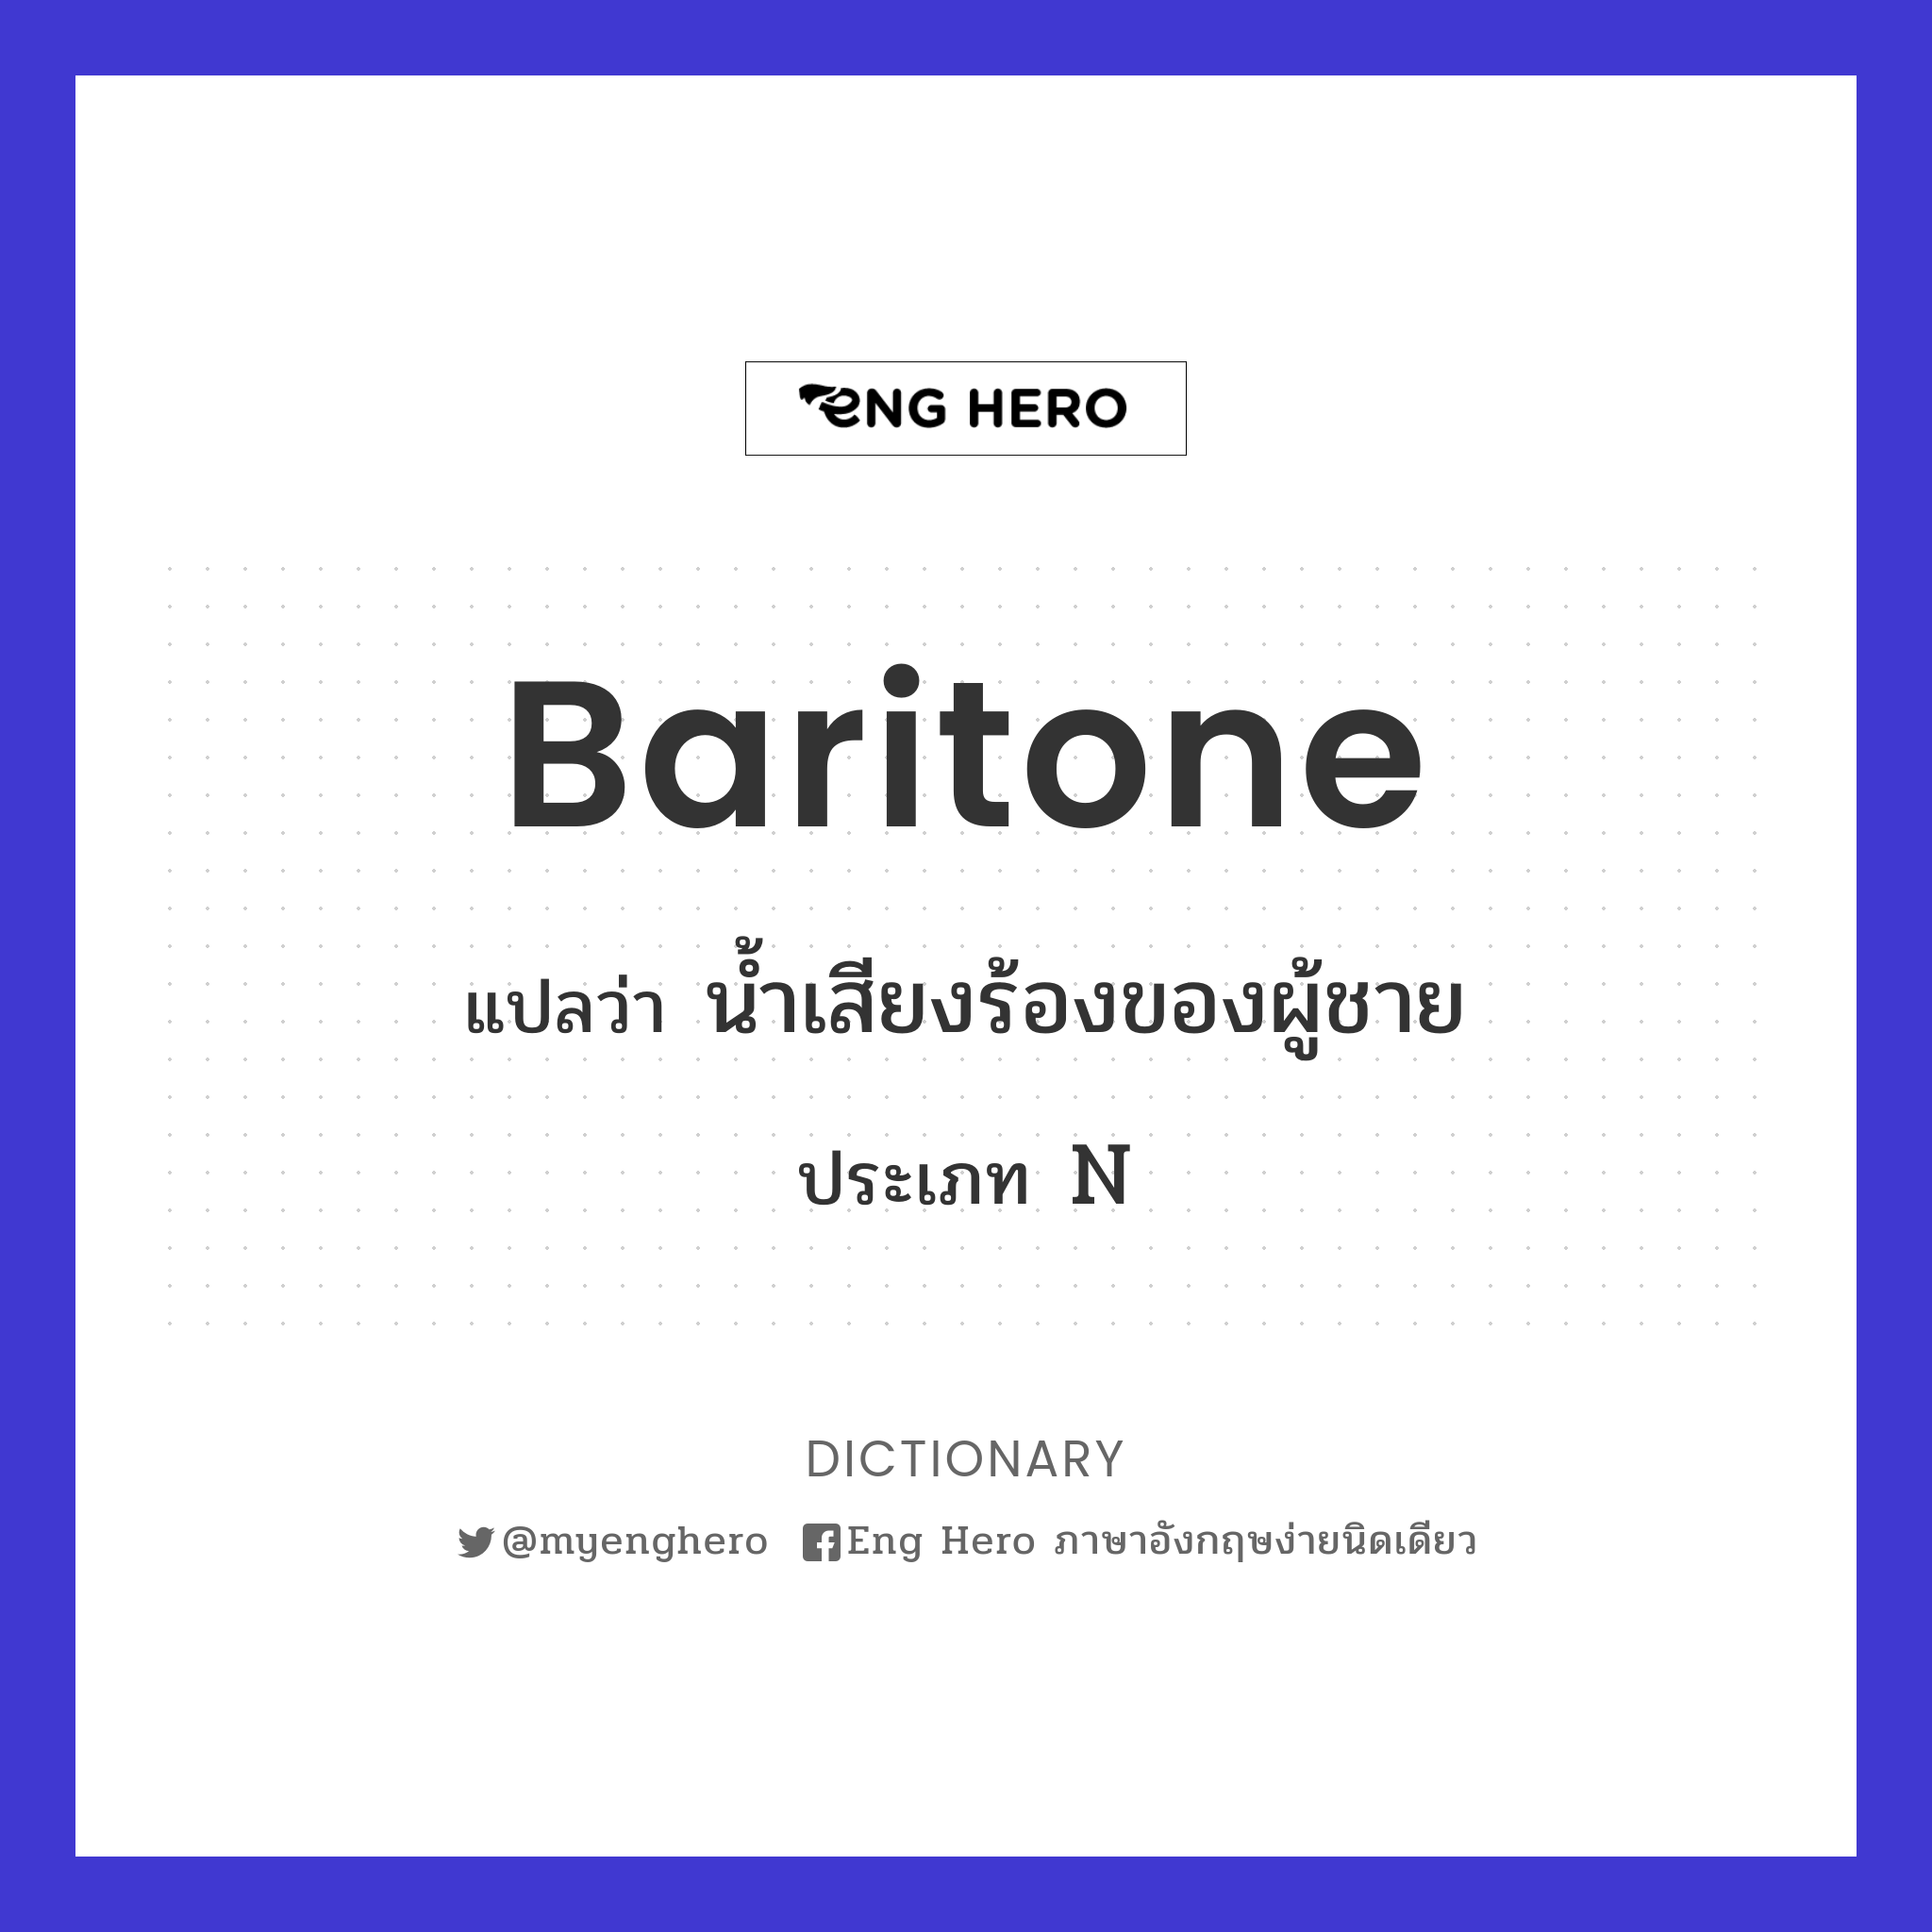 baritone